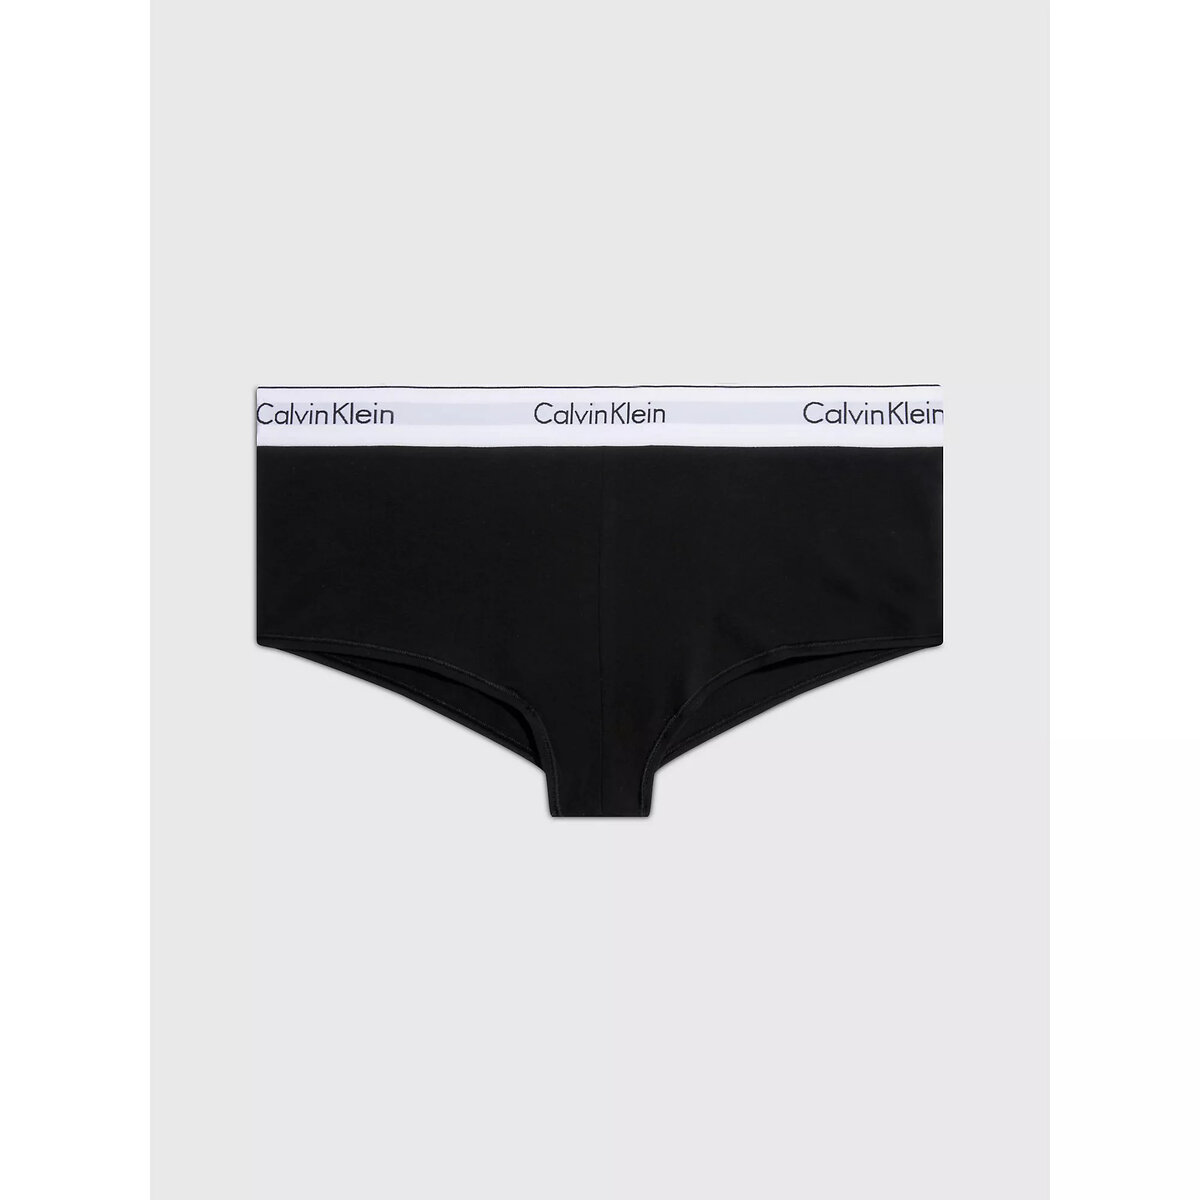 Ženské pohodlné kalhotky - Calvin Klein, XS i652_0000F3788E001005